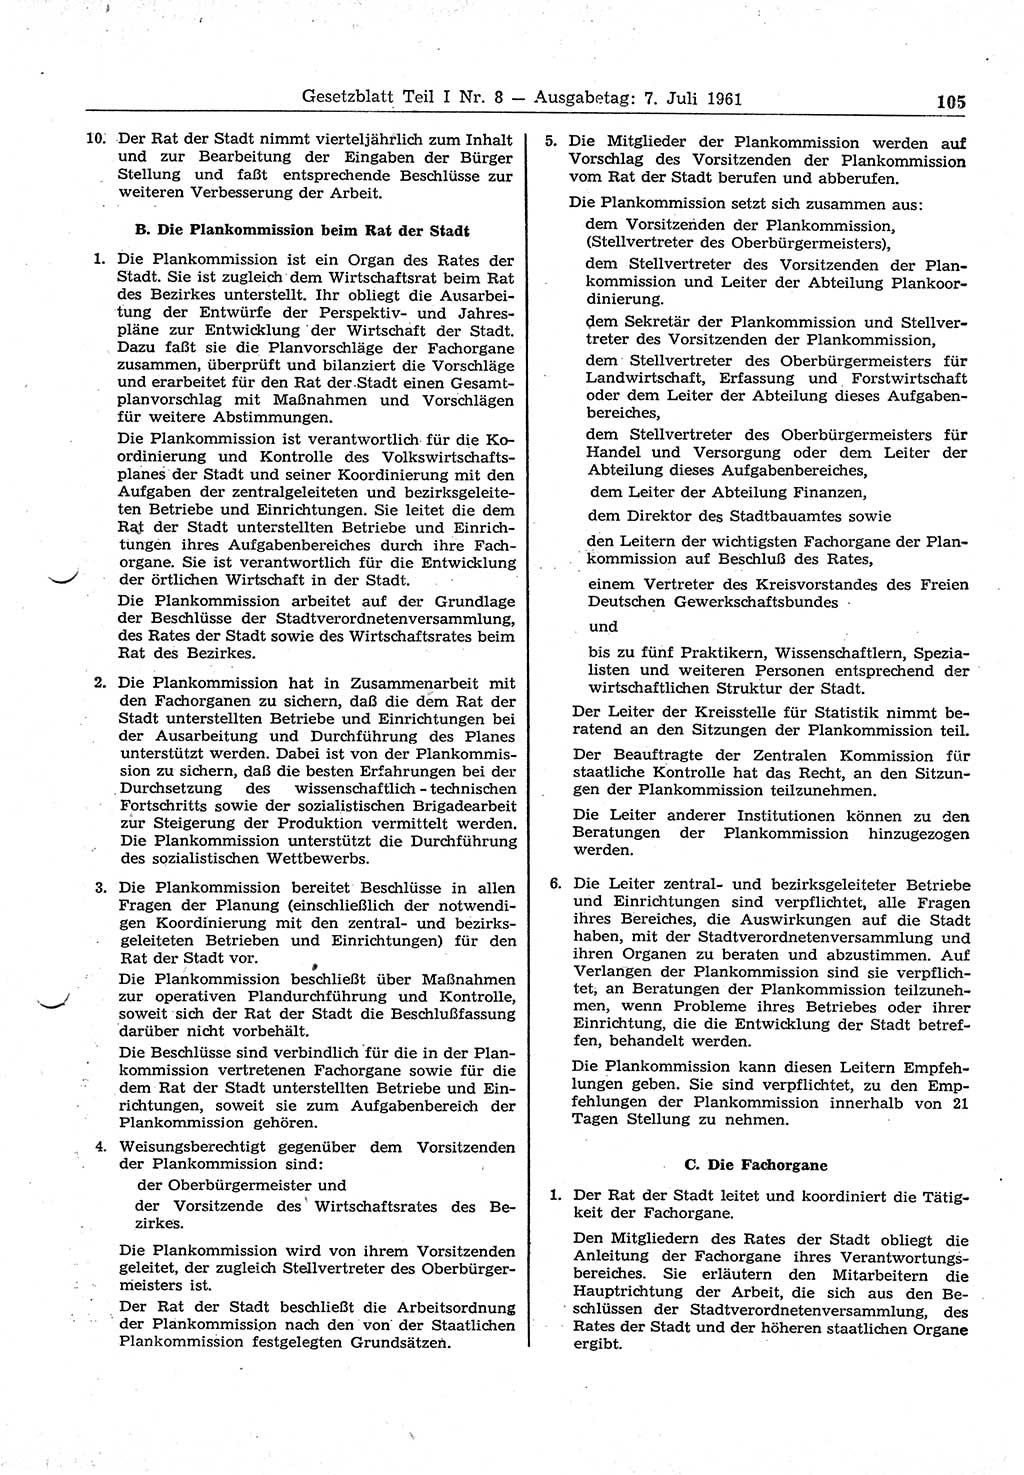 Gesetzblatt (GBl.) der Deutschen Demokratischen Republik (DDR) Teil Ⅰ 1961, Seite 105 (GBl. DDR Ⅰ 1961, S. 105)